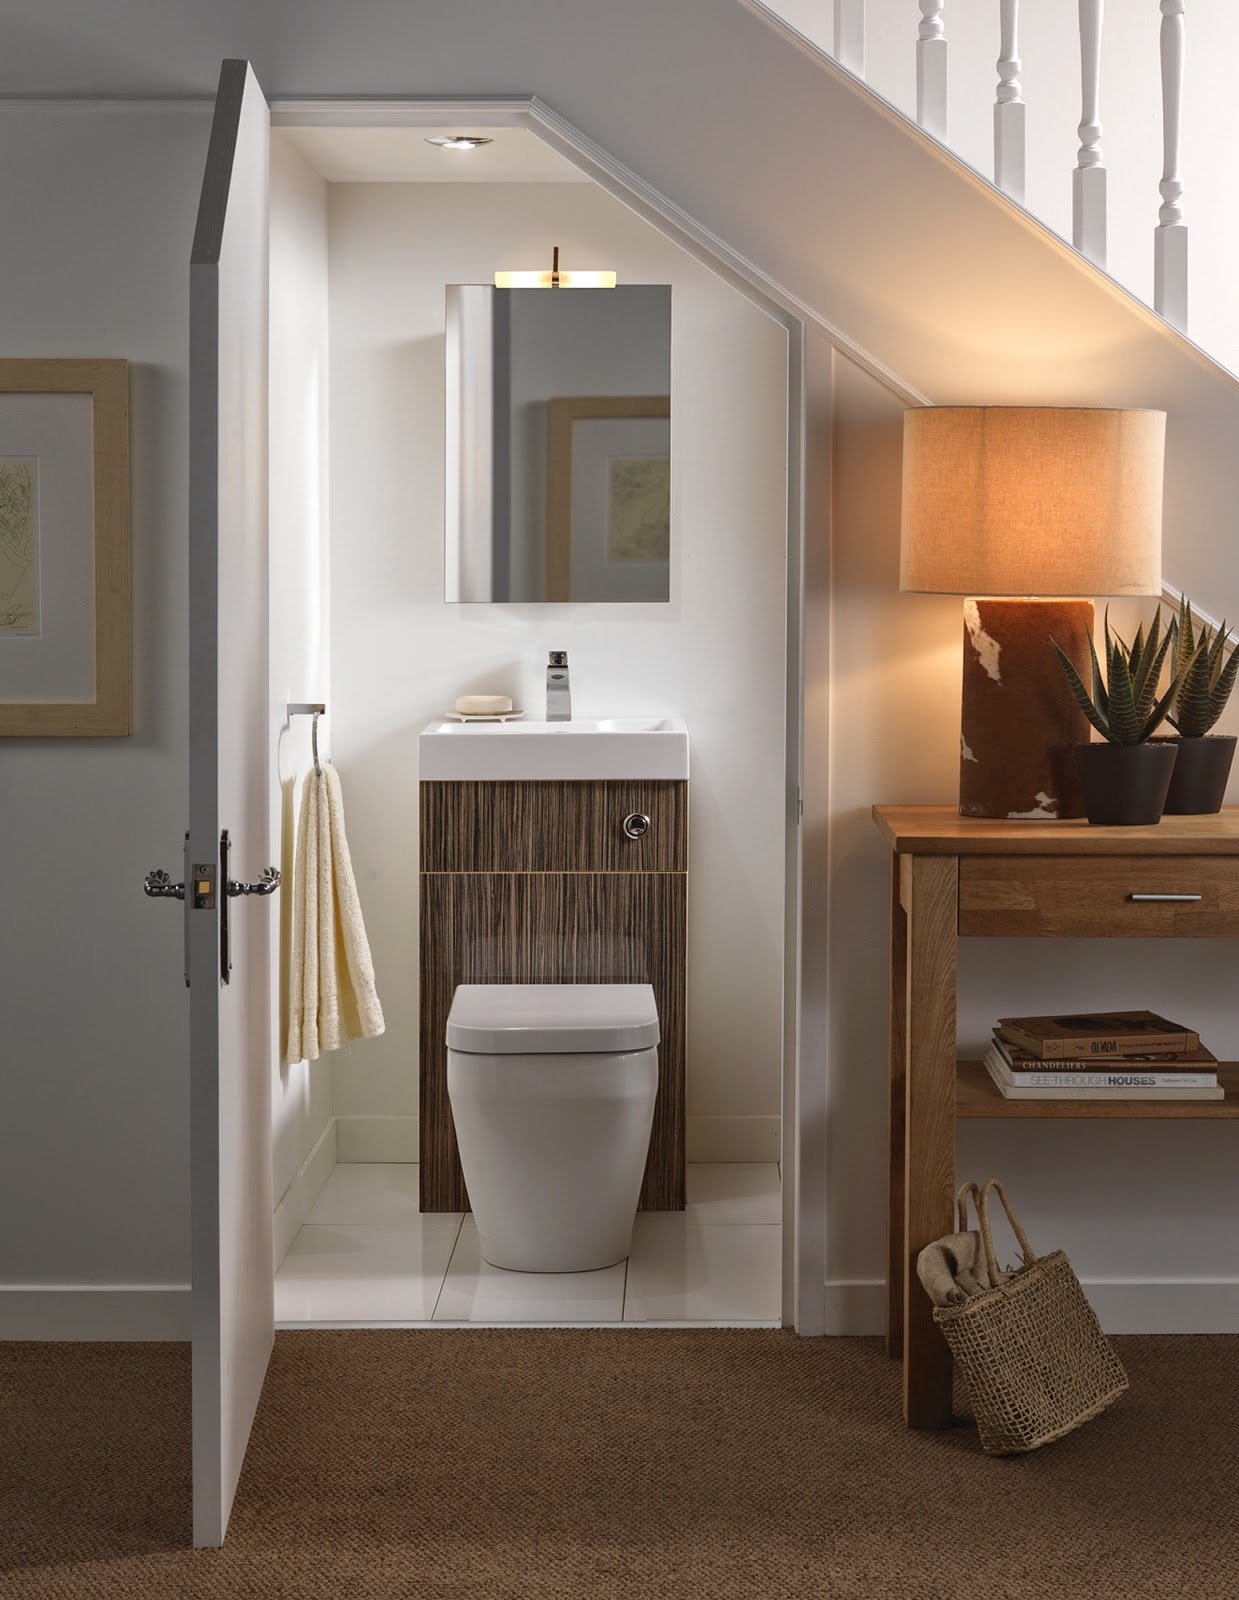 Bố trí nhà vệ sinh: Điều quan trọng nhất khi bố trí nhà vệ sinh là phải tôn trọng giá trị thẩm mỹ của ngôi nhà. Với sự khéo léo trong việc bố trí, nhà vệ sinh của bạn sẽ trở thành một nét độc đáo trong kiến trúc căn nhà.